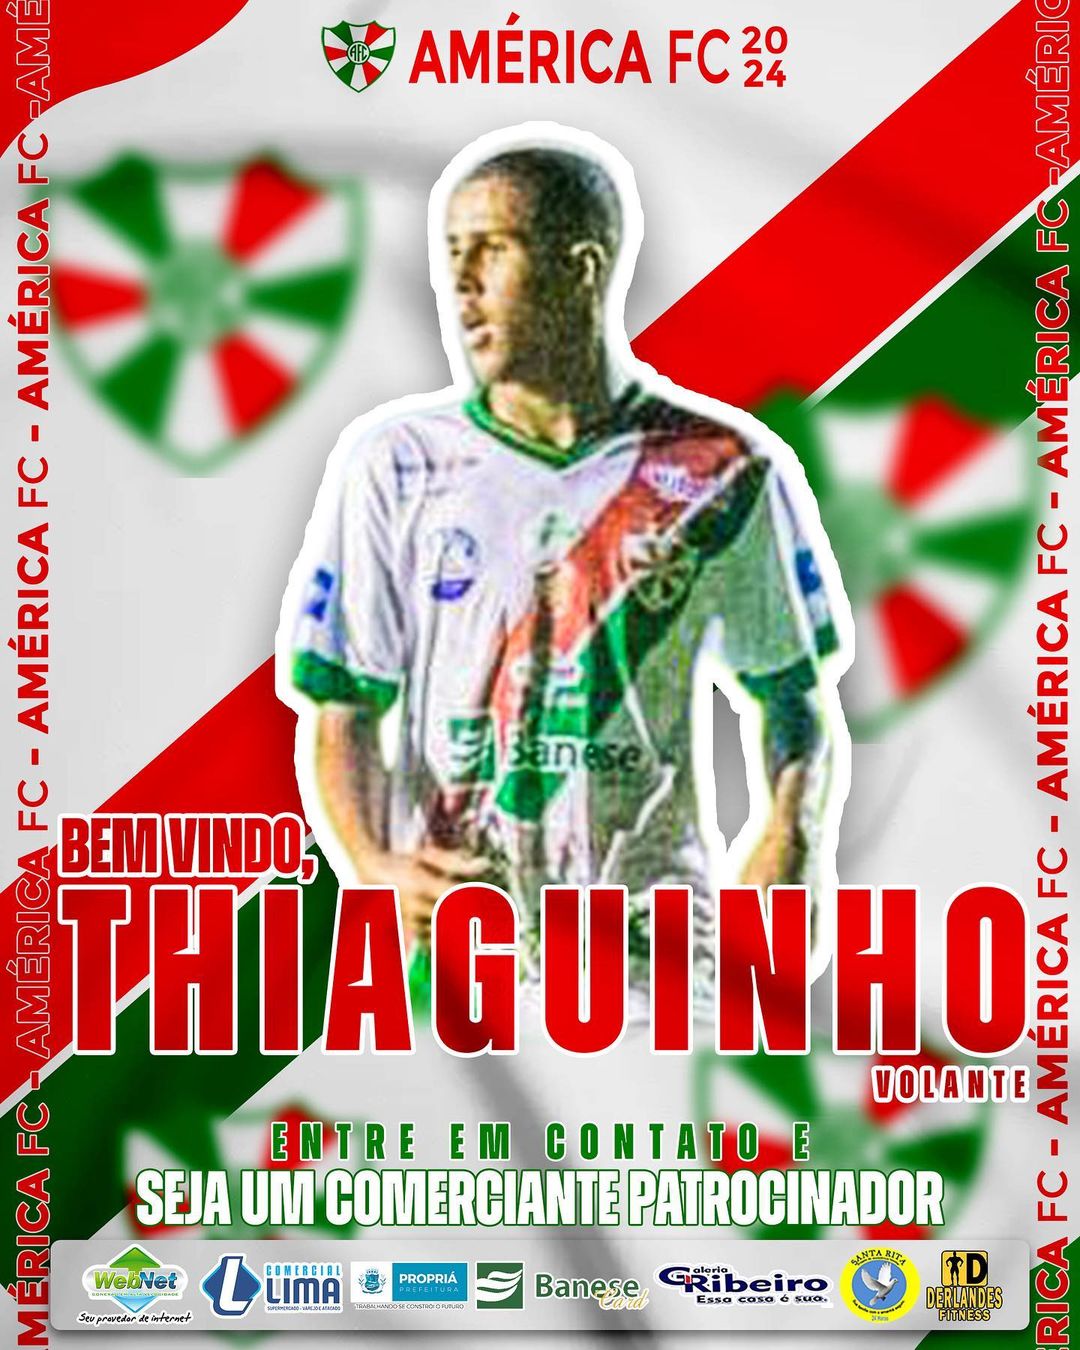 407562132_311659238124042_3453519532867219676_n Monteirense Thiaguinho se junta ao América para a primeira divisão do Campeonato Sergipano